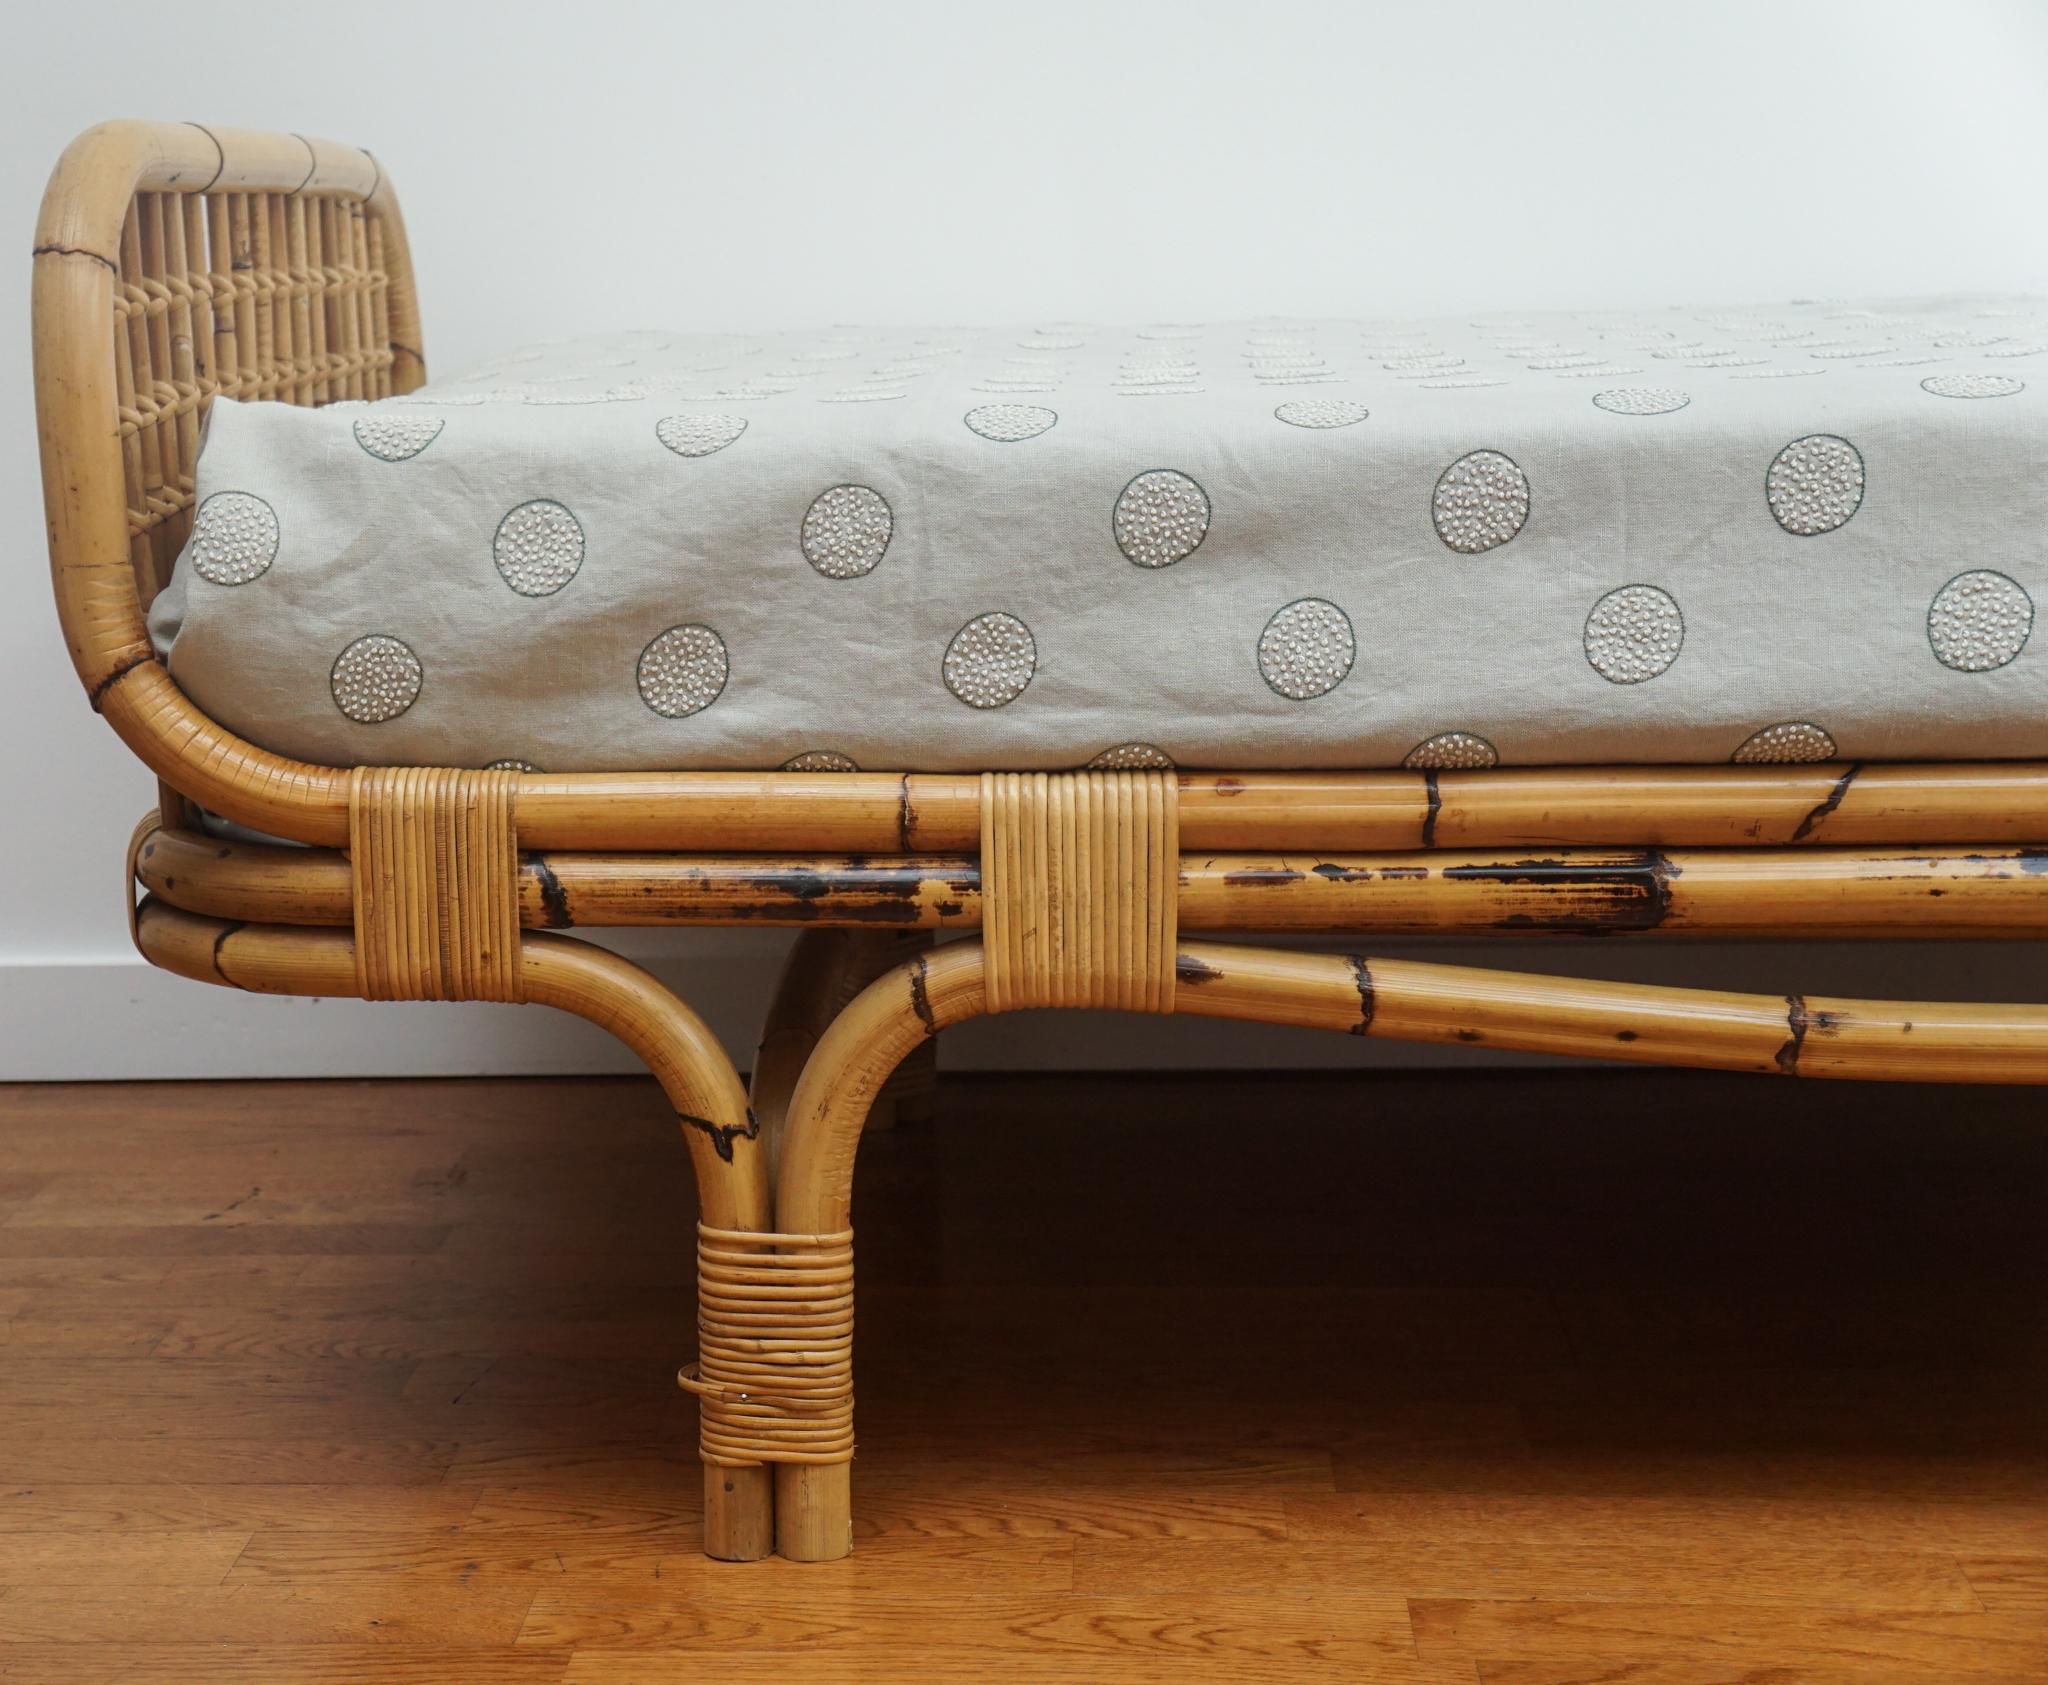 Le lit de jour en bambou français de style Jean Royere, présenté ici, a été fabriqué dans les années 1960.  De construction solide et en très bon état, ce lit de jour en bambou se distingue par son profil bas, ses lignes gracieuses et sa patine